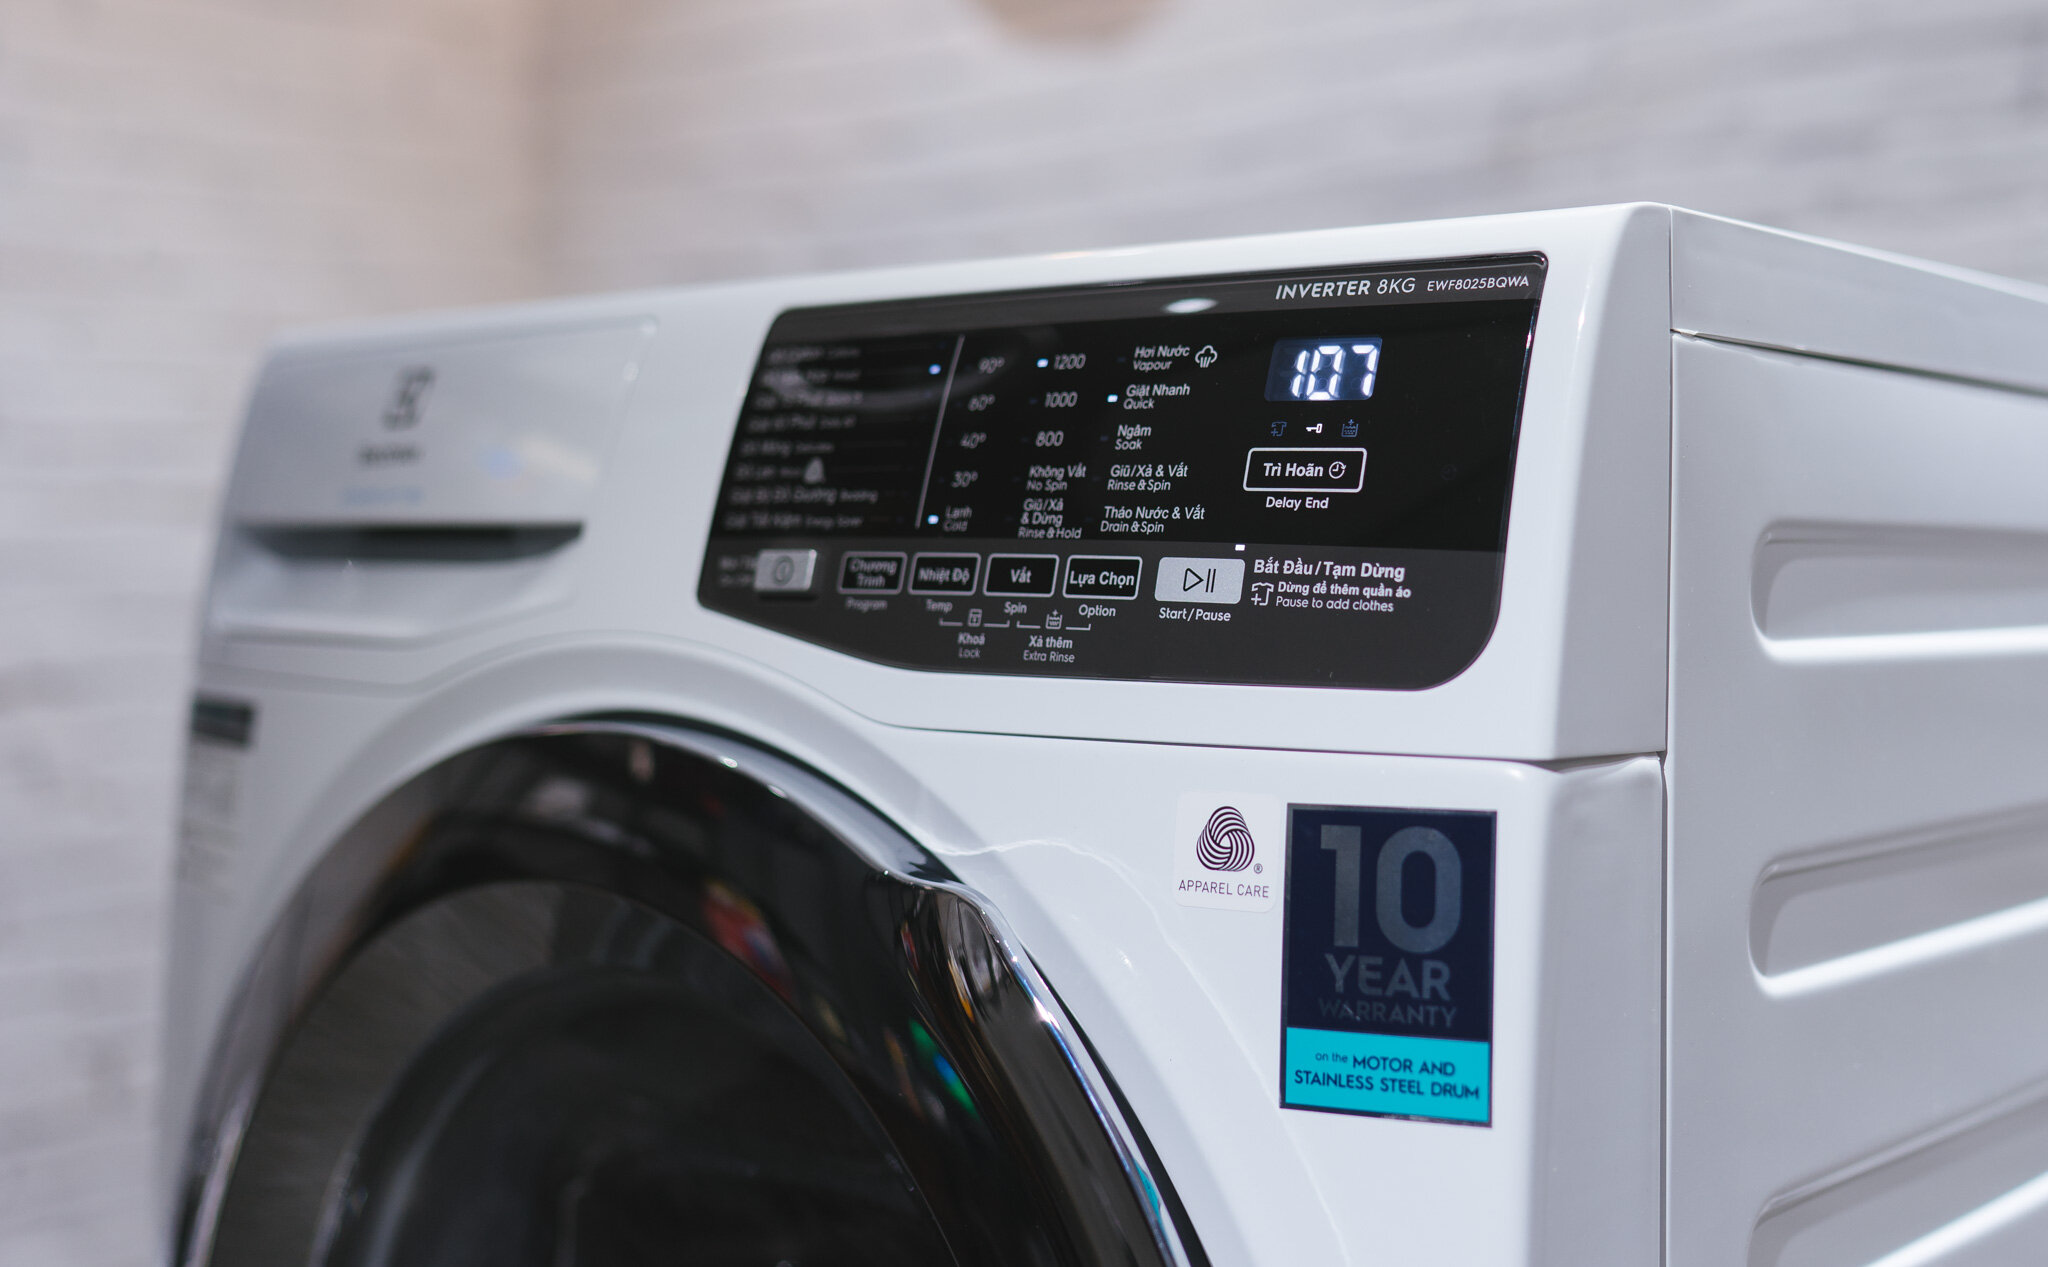 Máy giặt Electrolux có chức năng “Tiết kiệm thời gian” hiệu quả